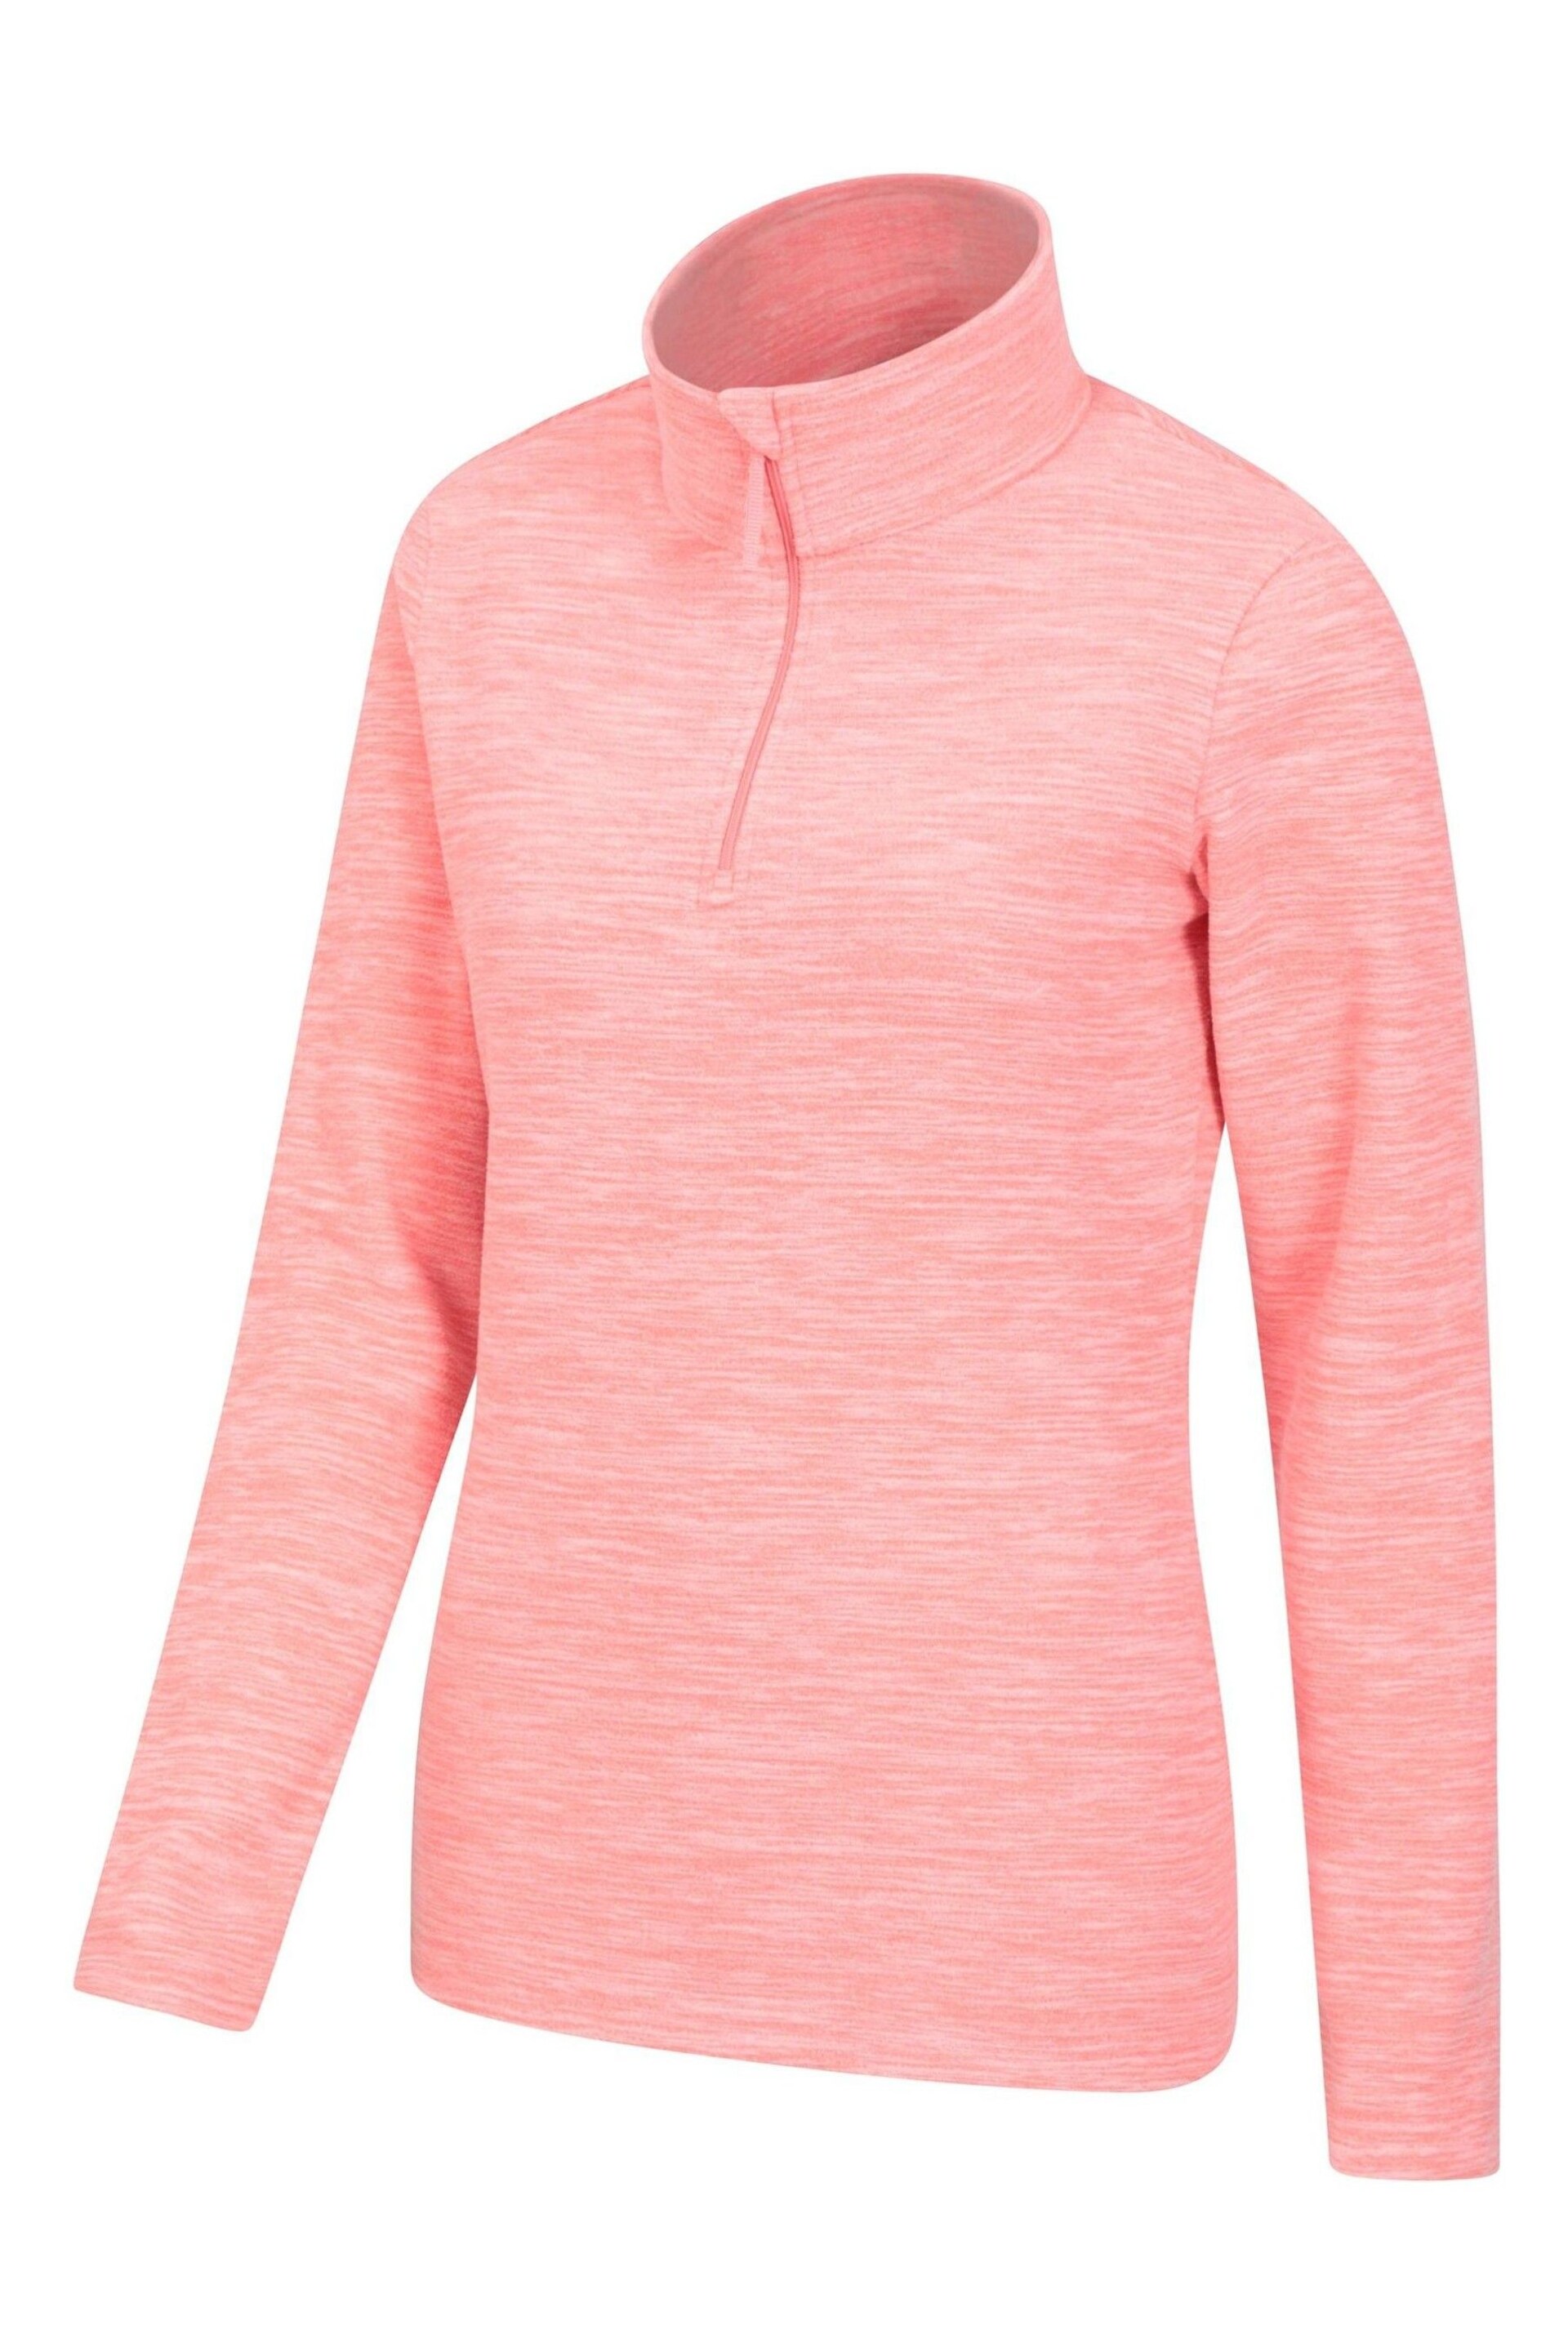 Mountain Warehouse Pink Womens Snowdon Melange Half-Zip Fleece - Image 3 of 5